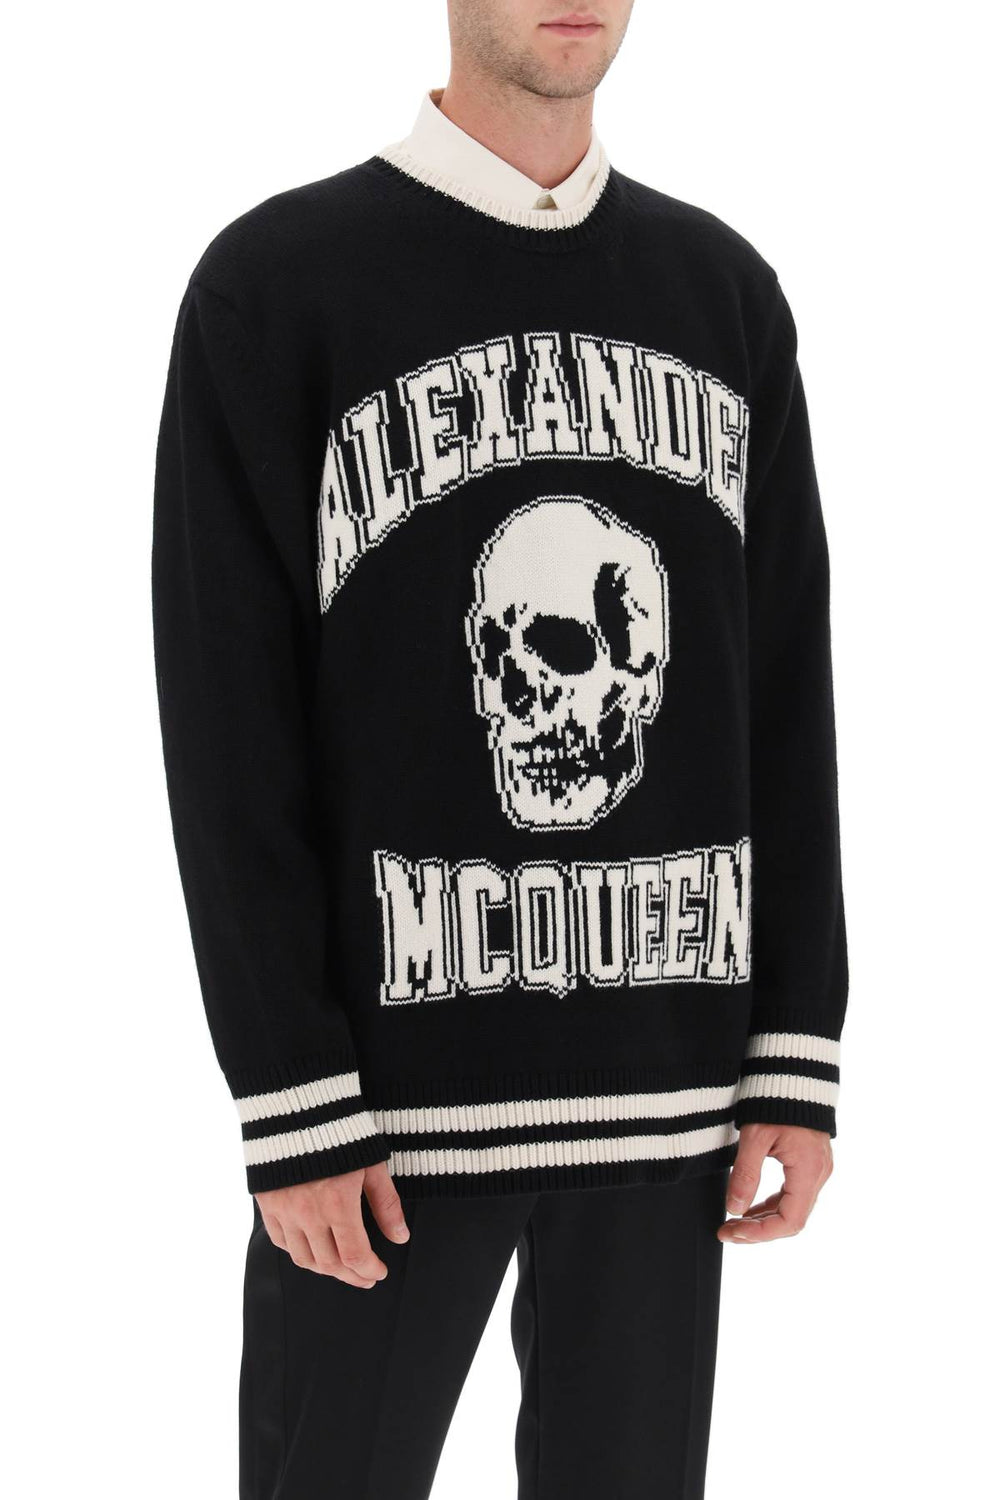 Alexander mcqueen varsity sweater with skull motif-1